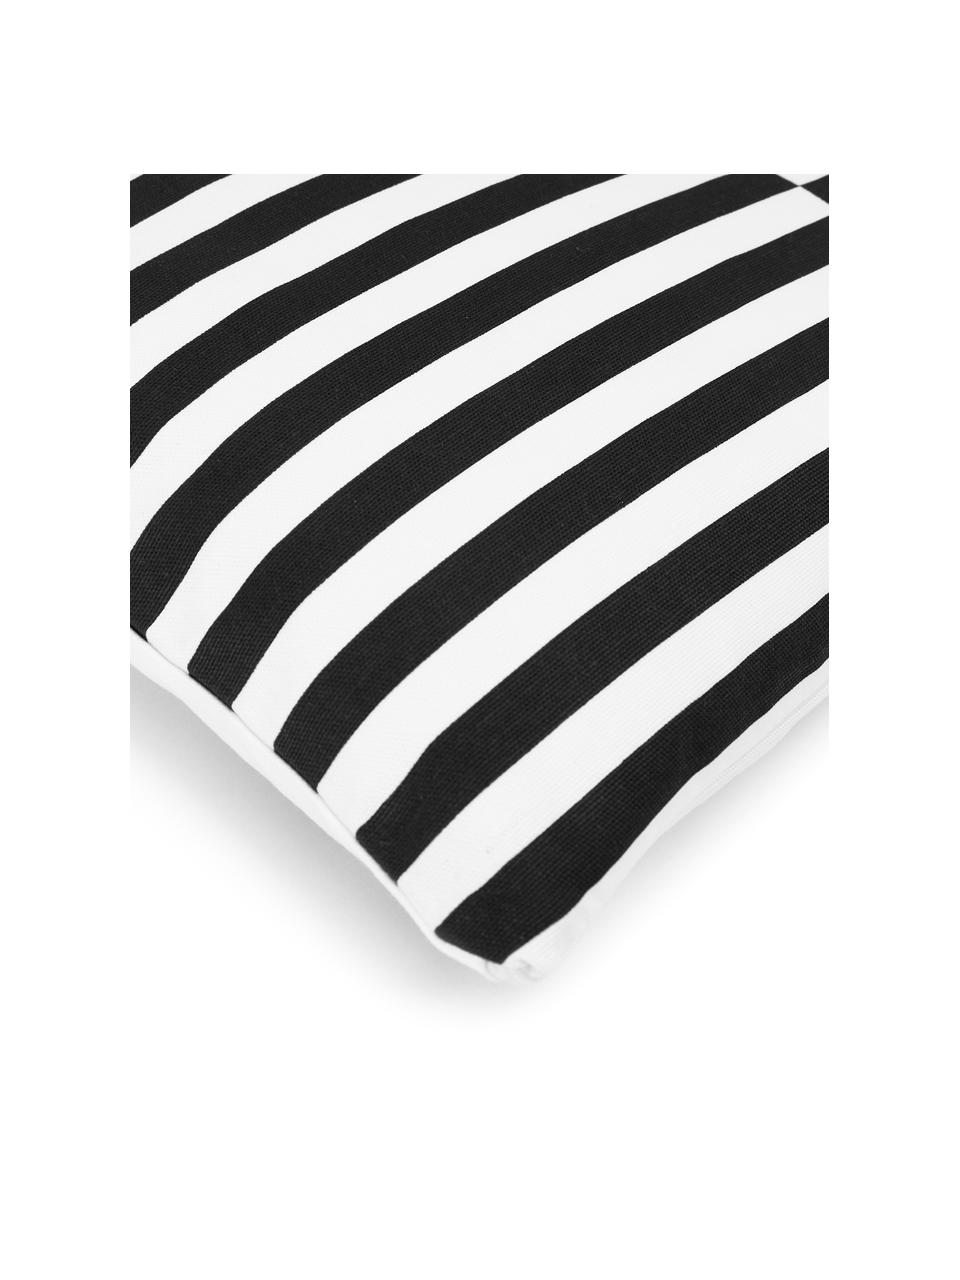 Poszewka na poduszkę Ivo, 100% bawełna, Biały, czarny, S 45 x D 45 cm